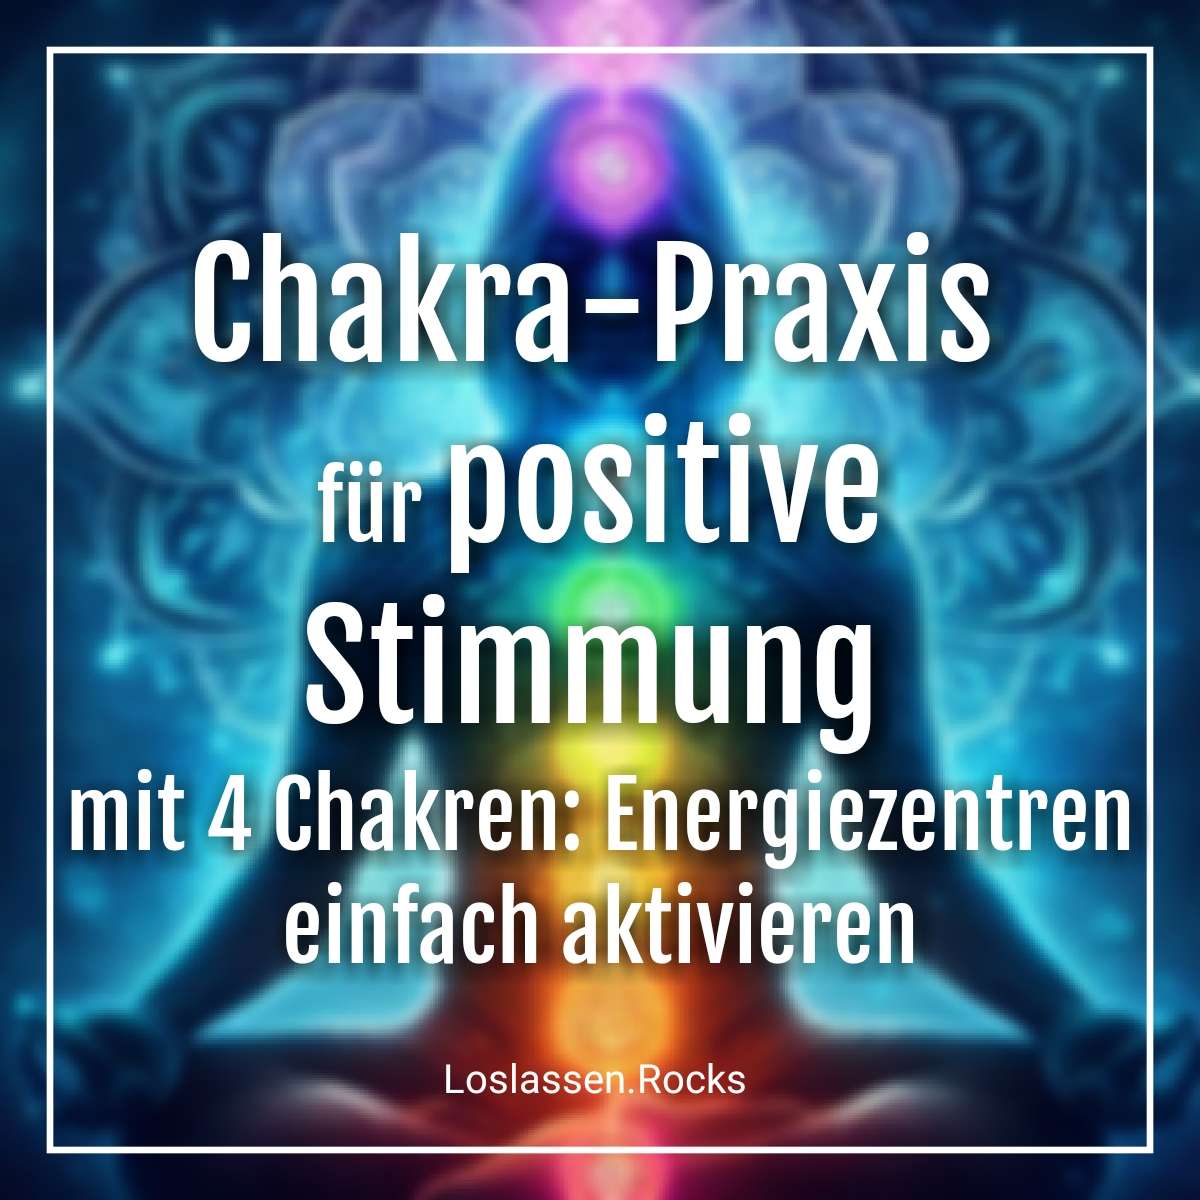 Chakra-Praxis für positive Stimmung mit 4 Chakren: Energiezentren einfach aktivieren